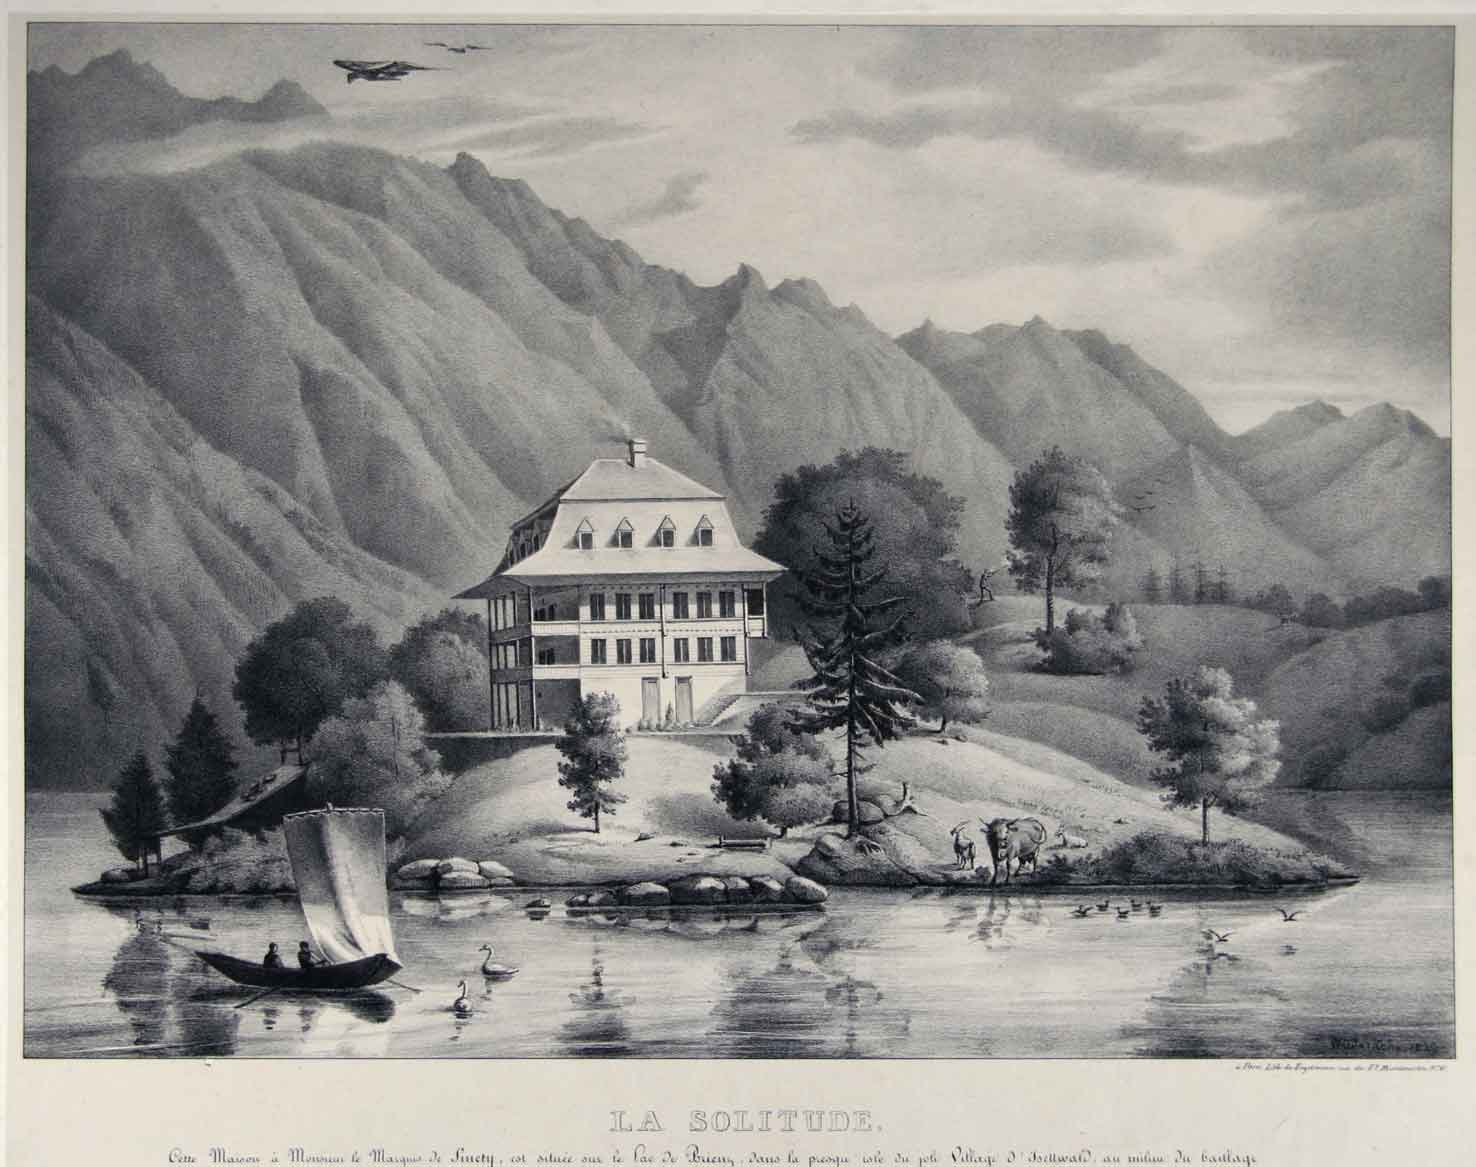 KEHR, van der : - La Solitude. Cette maison  Monsieur le Marquis de Sinety est situe sur le Lac de Brienz, dans la presque'isle du joli Village d'Isettwald, au milieu du baillage d'Interlaken et de l'Oberland Bernois.